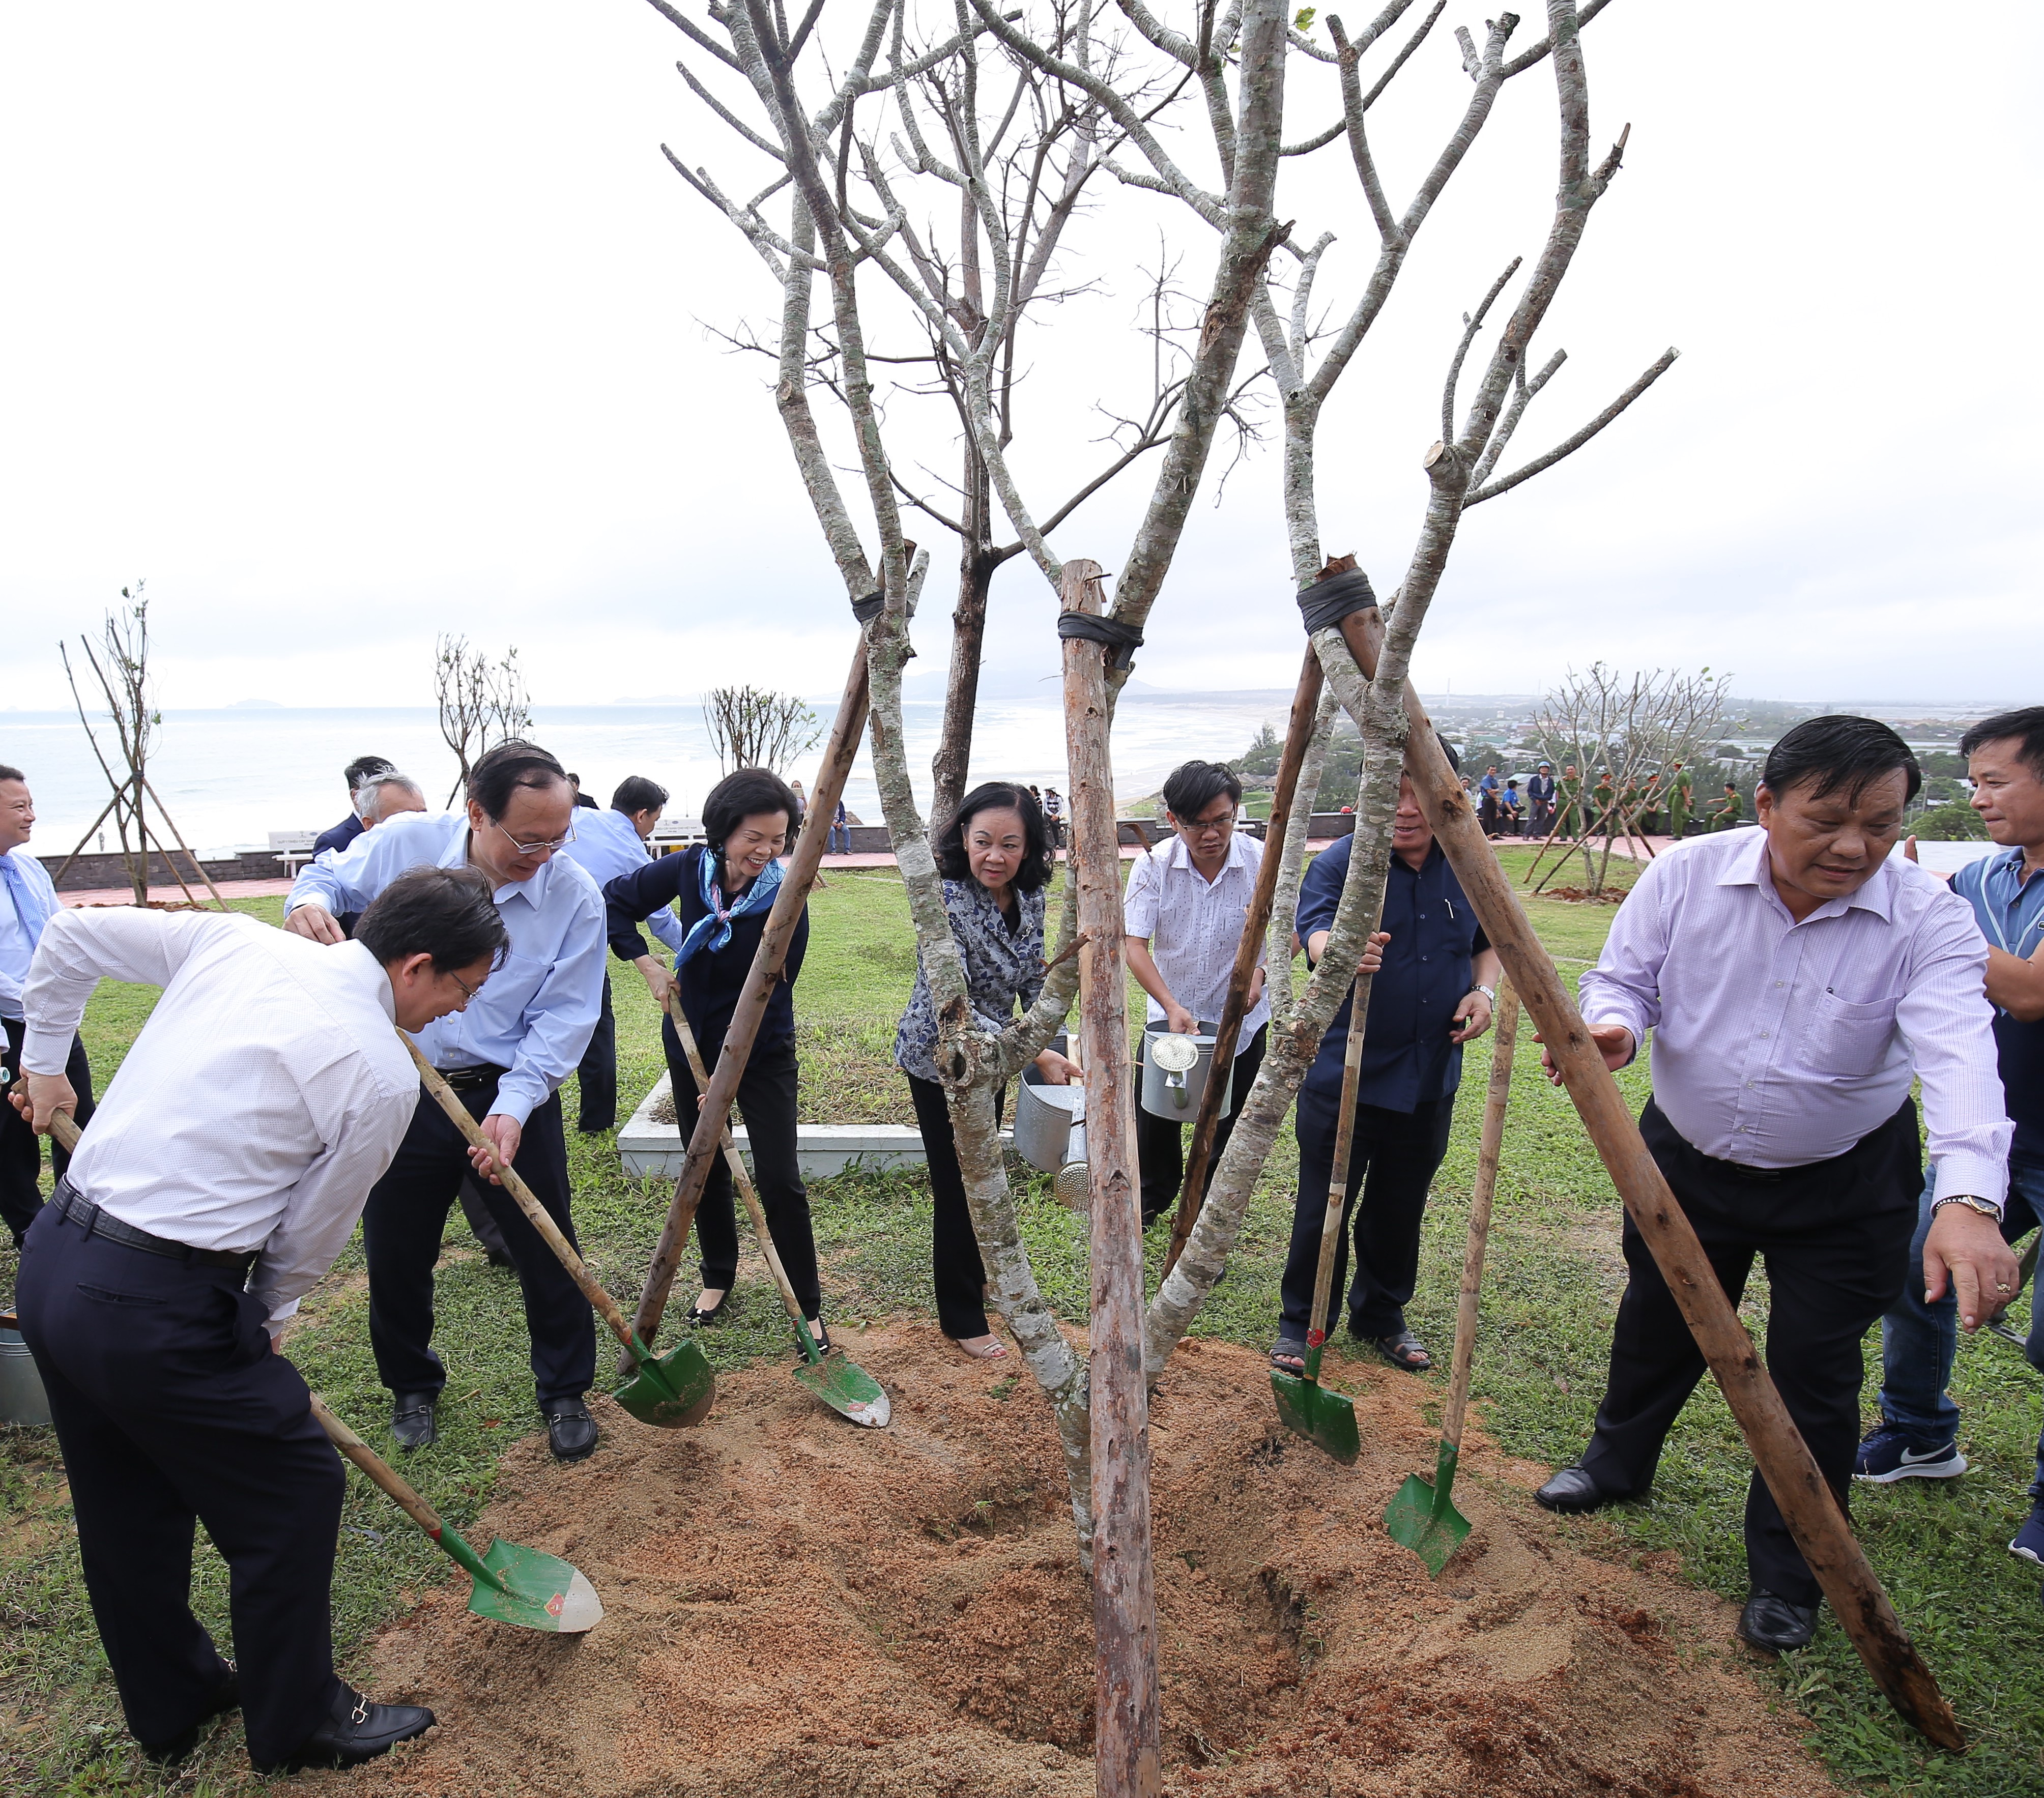 Chương trình đã trồng nhiều cây xanh tại các khu di tích khác nhau tại Bến Tre, Bình Định, Bắc Kạn, Cao Bằng…nhằm góp phần tạo không gian xanh đặc trưng và hấp dẫn cho các khu di tích